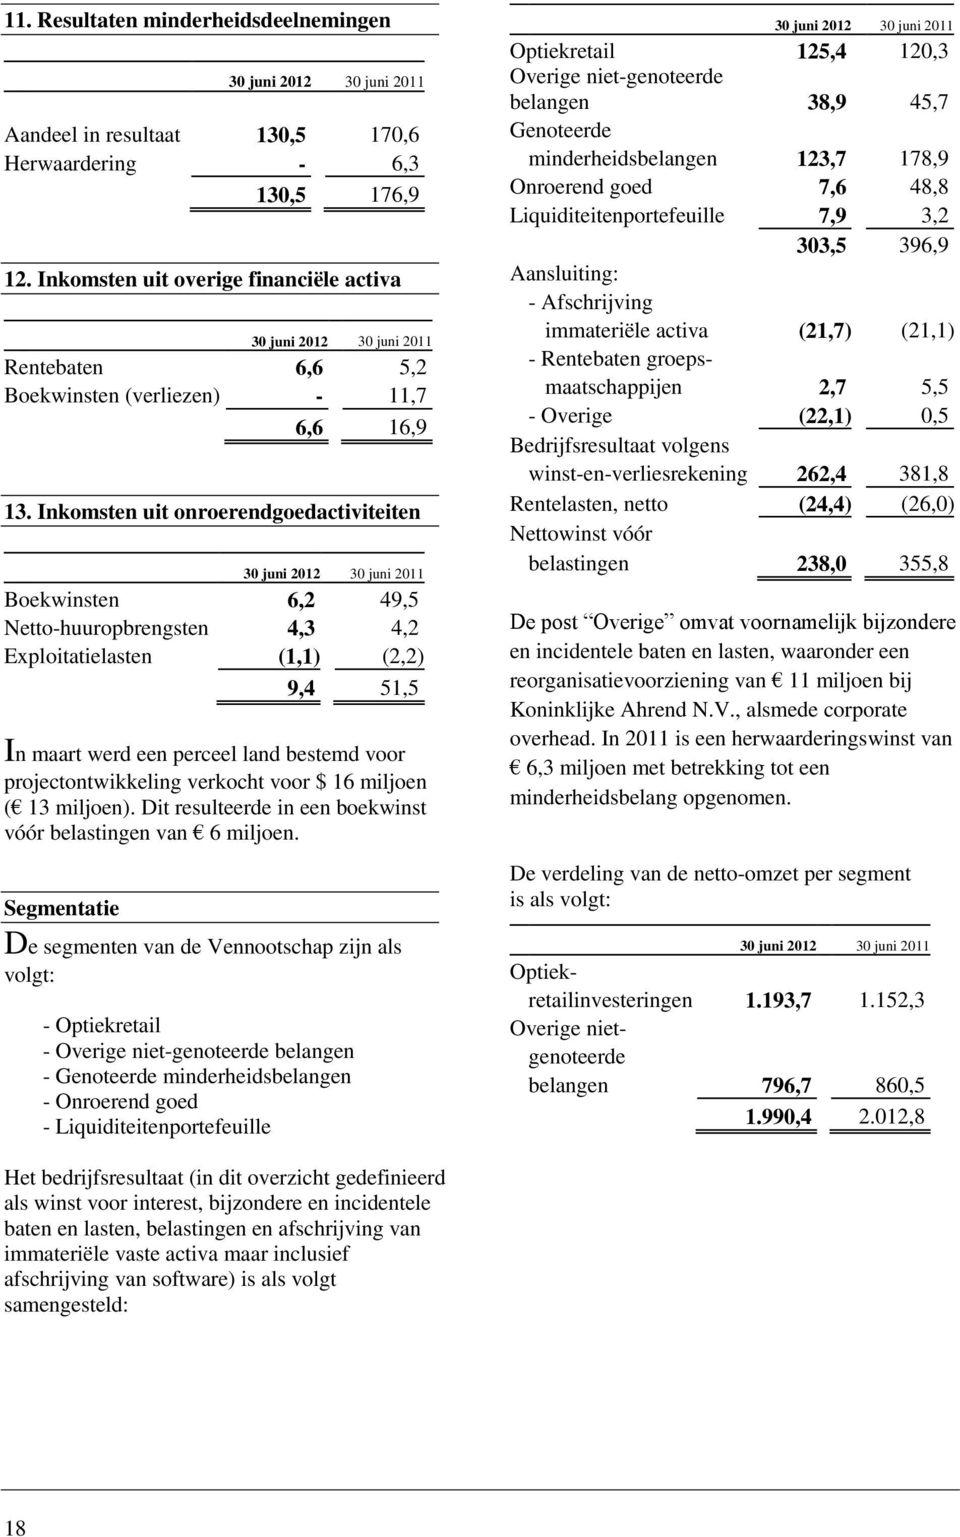 Inkomsten uit onroerendgoedactiviteiten 30 juni 2012 30 juni 2011 Boekwinsten 6,2 49,5 Netto-huuropbrengsten 4,3 4,2 Exploitatielasten (1,1) (2,2) 9,4 51,5 In maart werd een perceel land bestemd voor